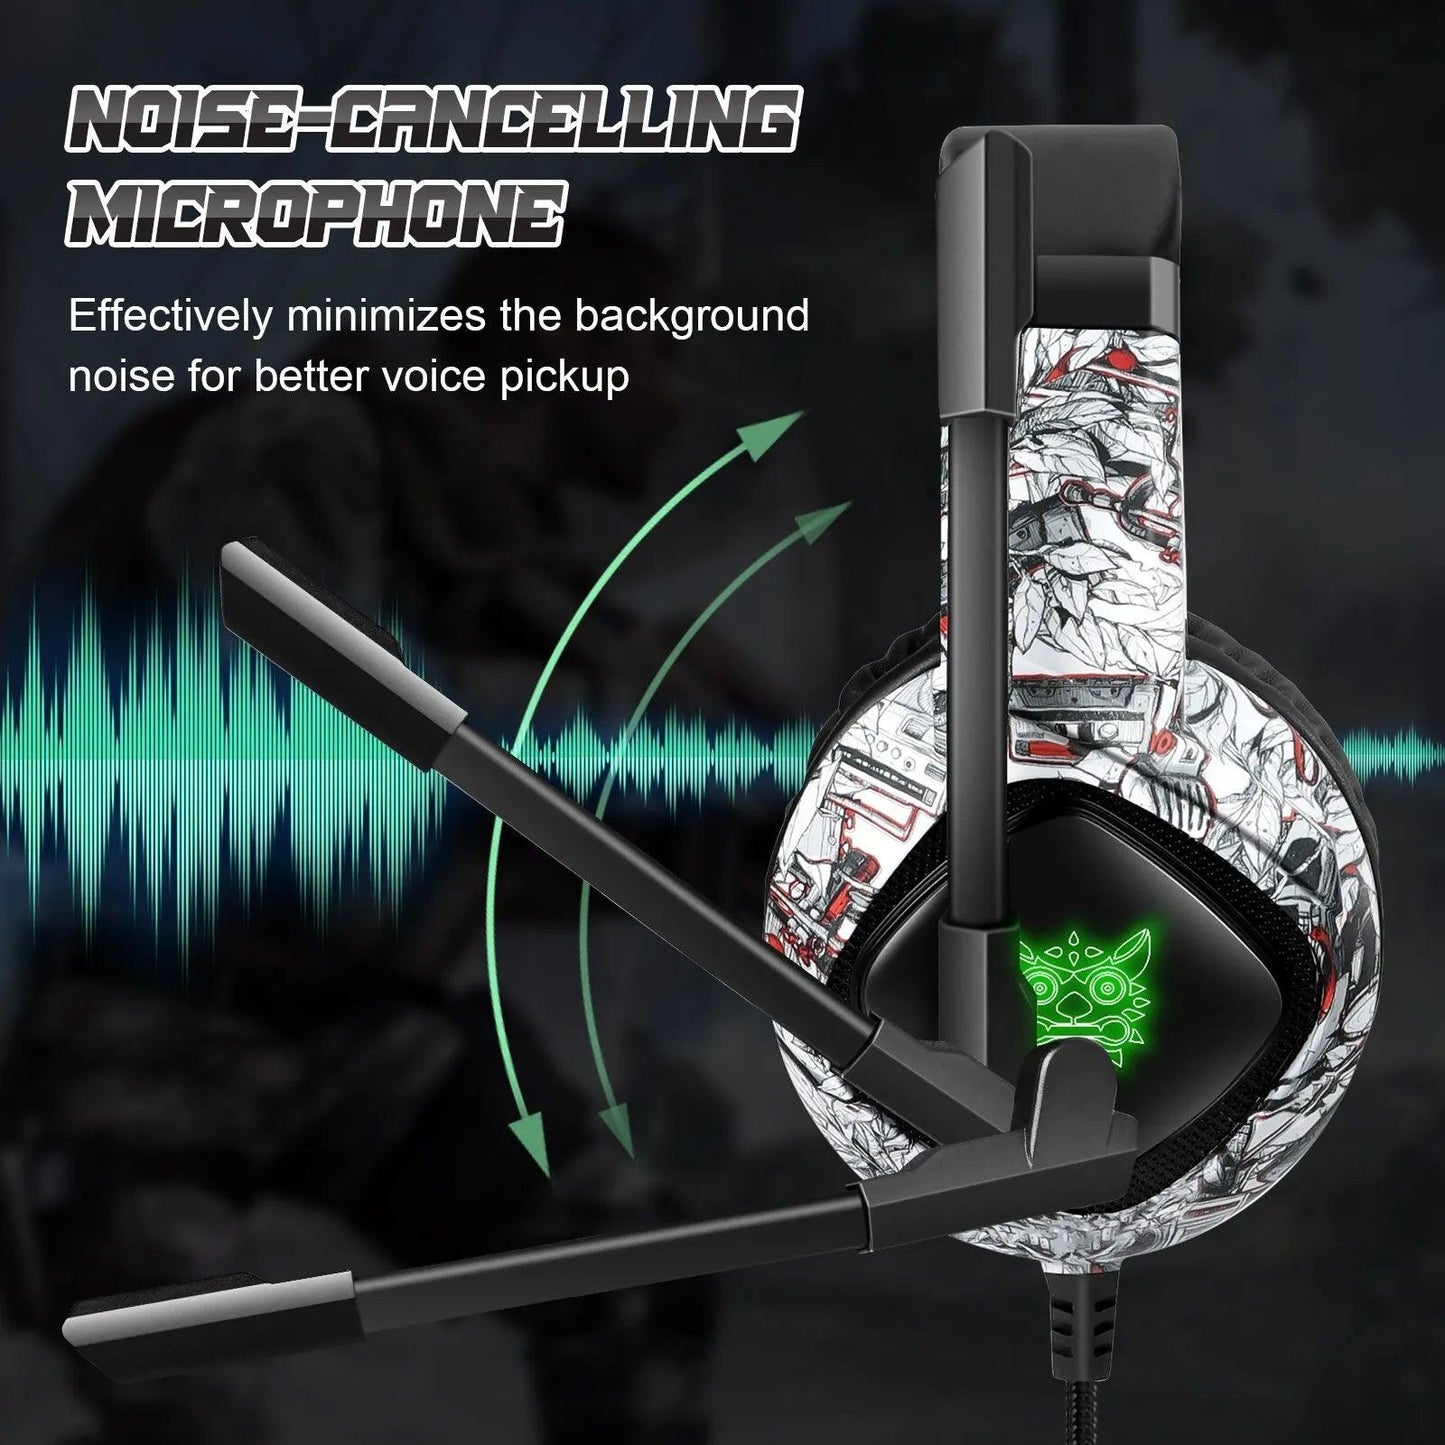 ONIKUMA K19 Gaming Headset - GENESIZ GAMING